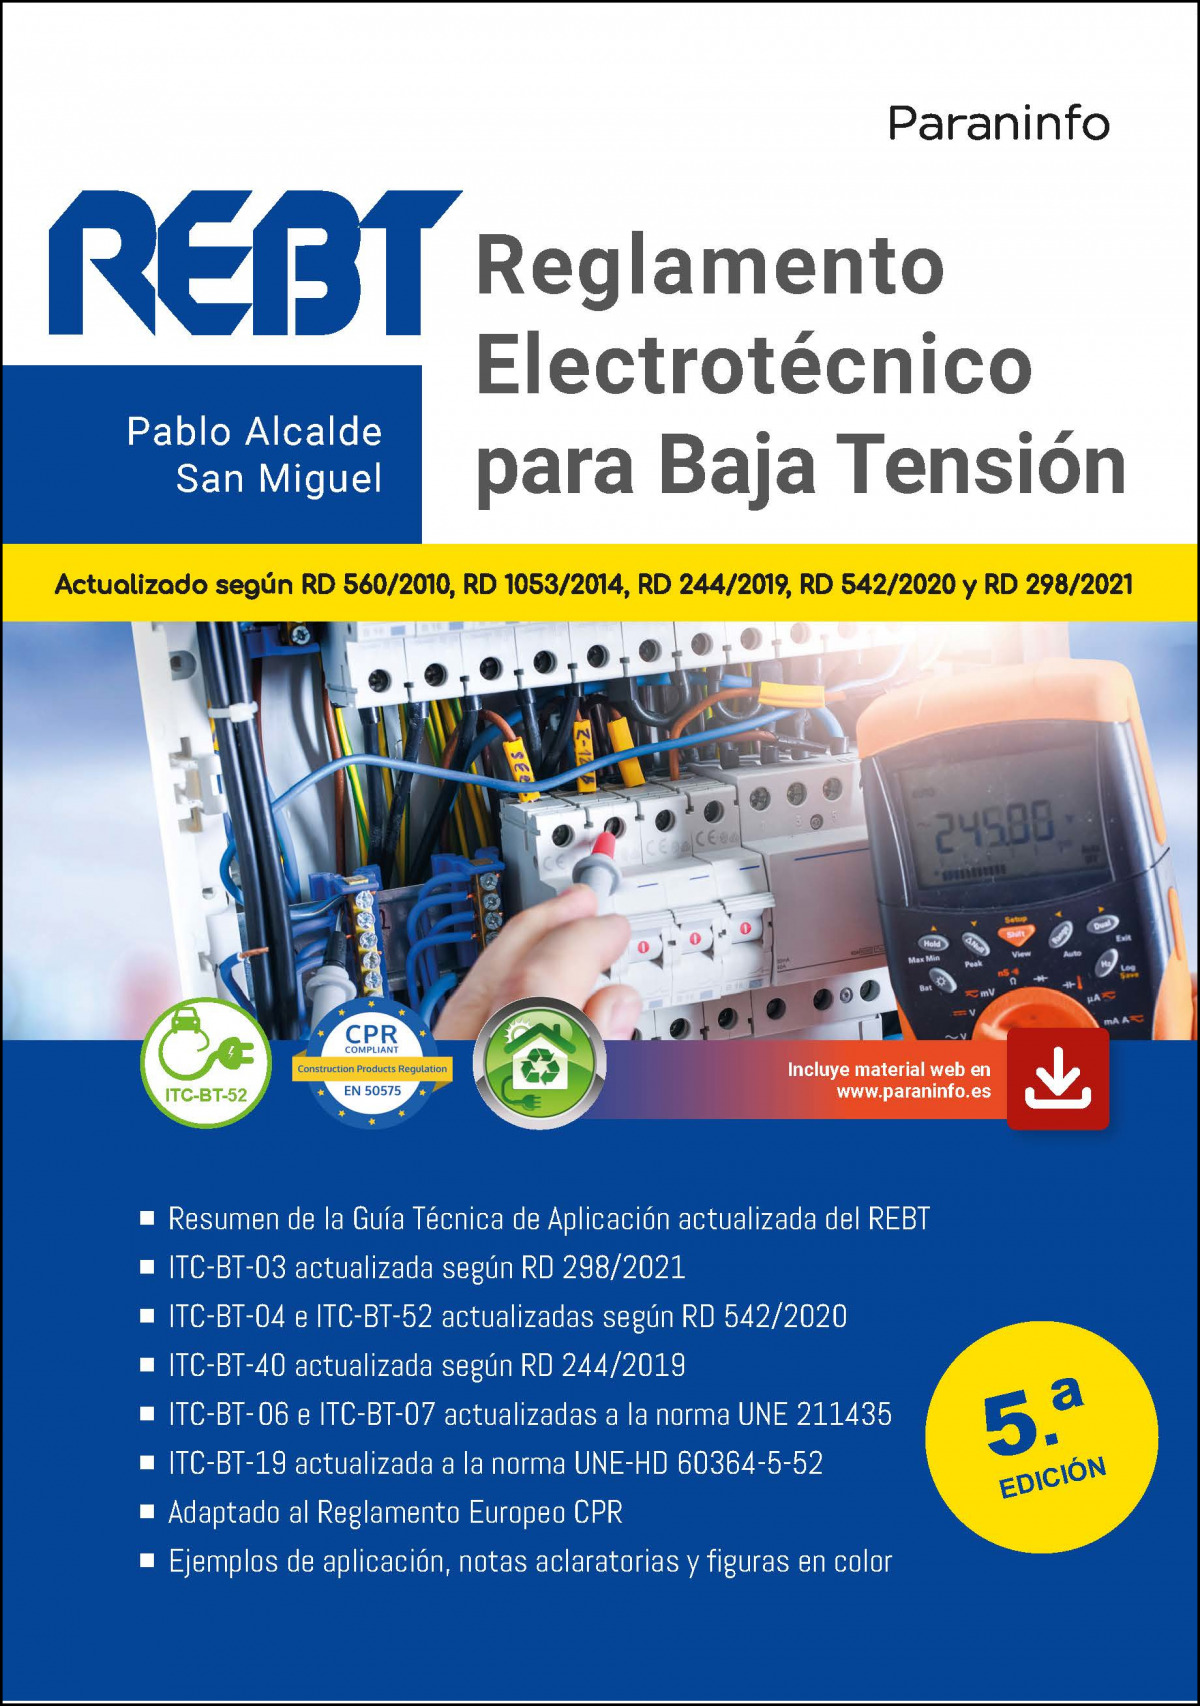 Rebt reglamento electrotecnico para baja tension